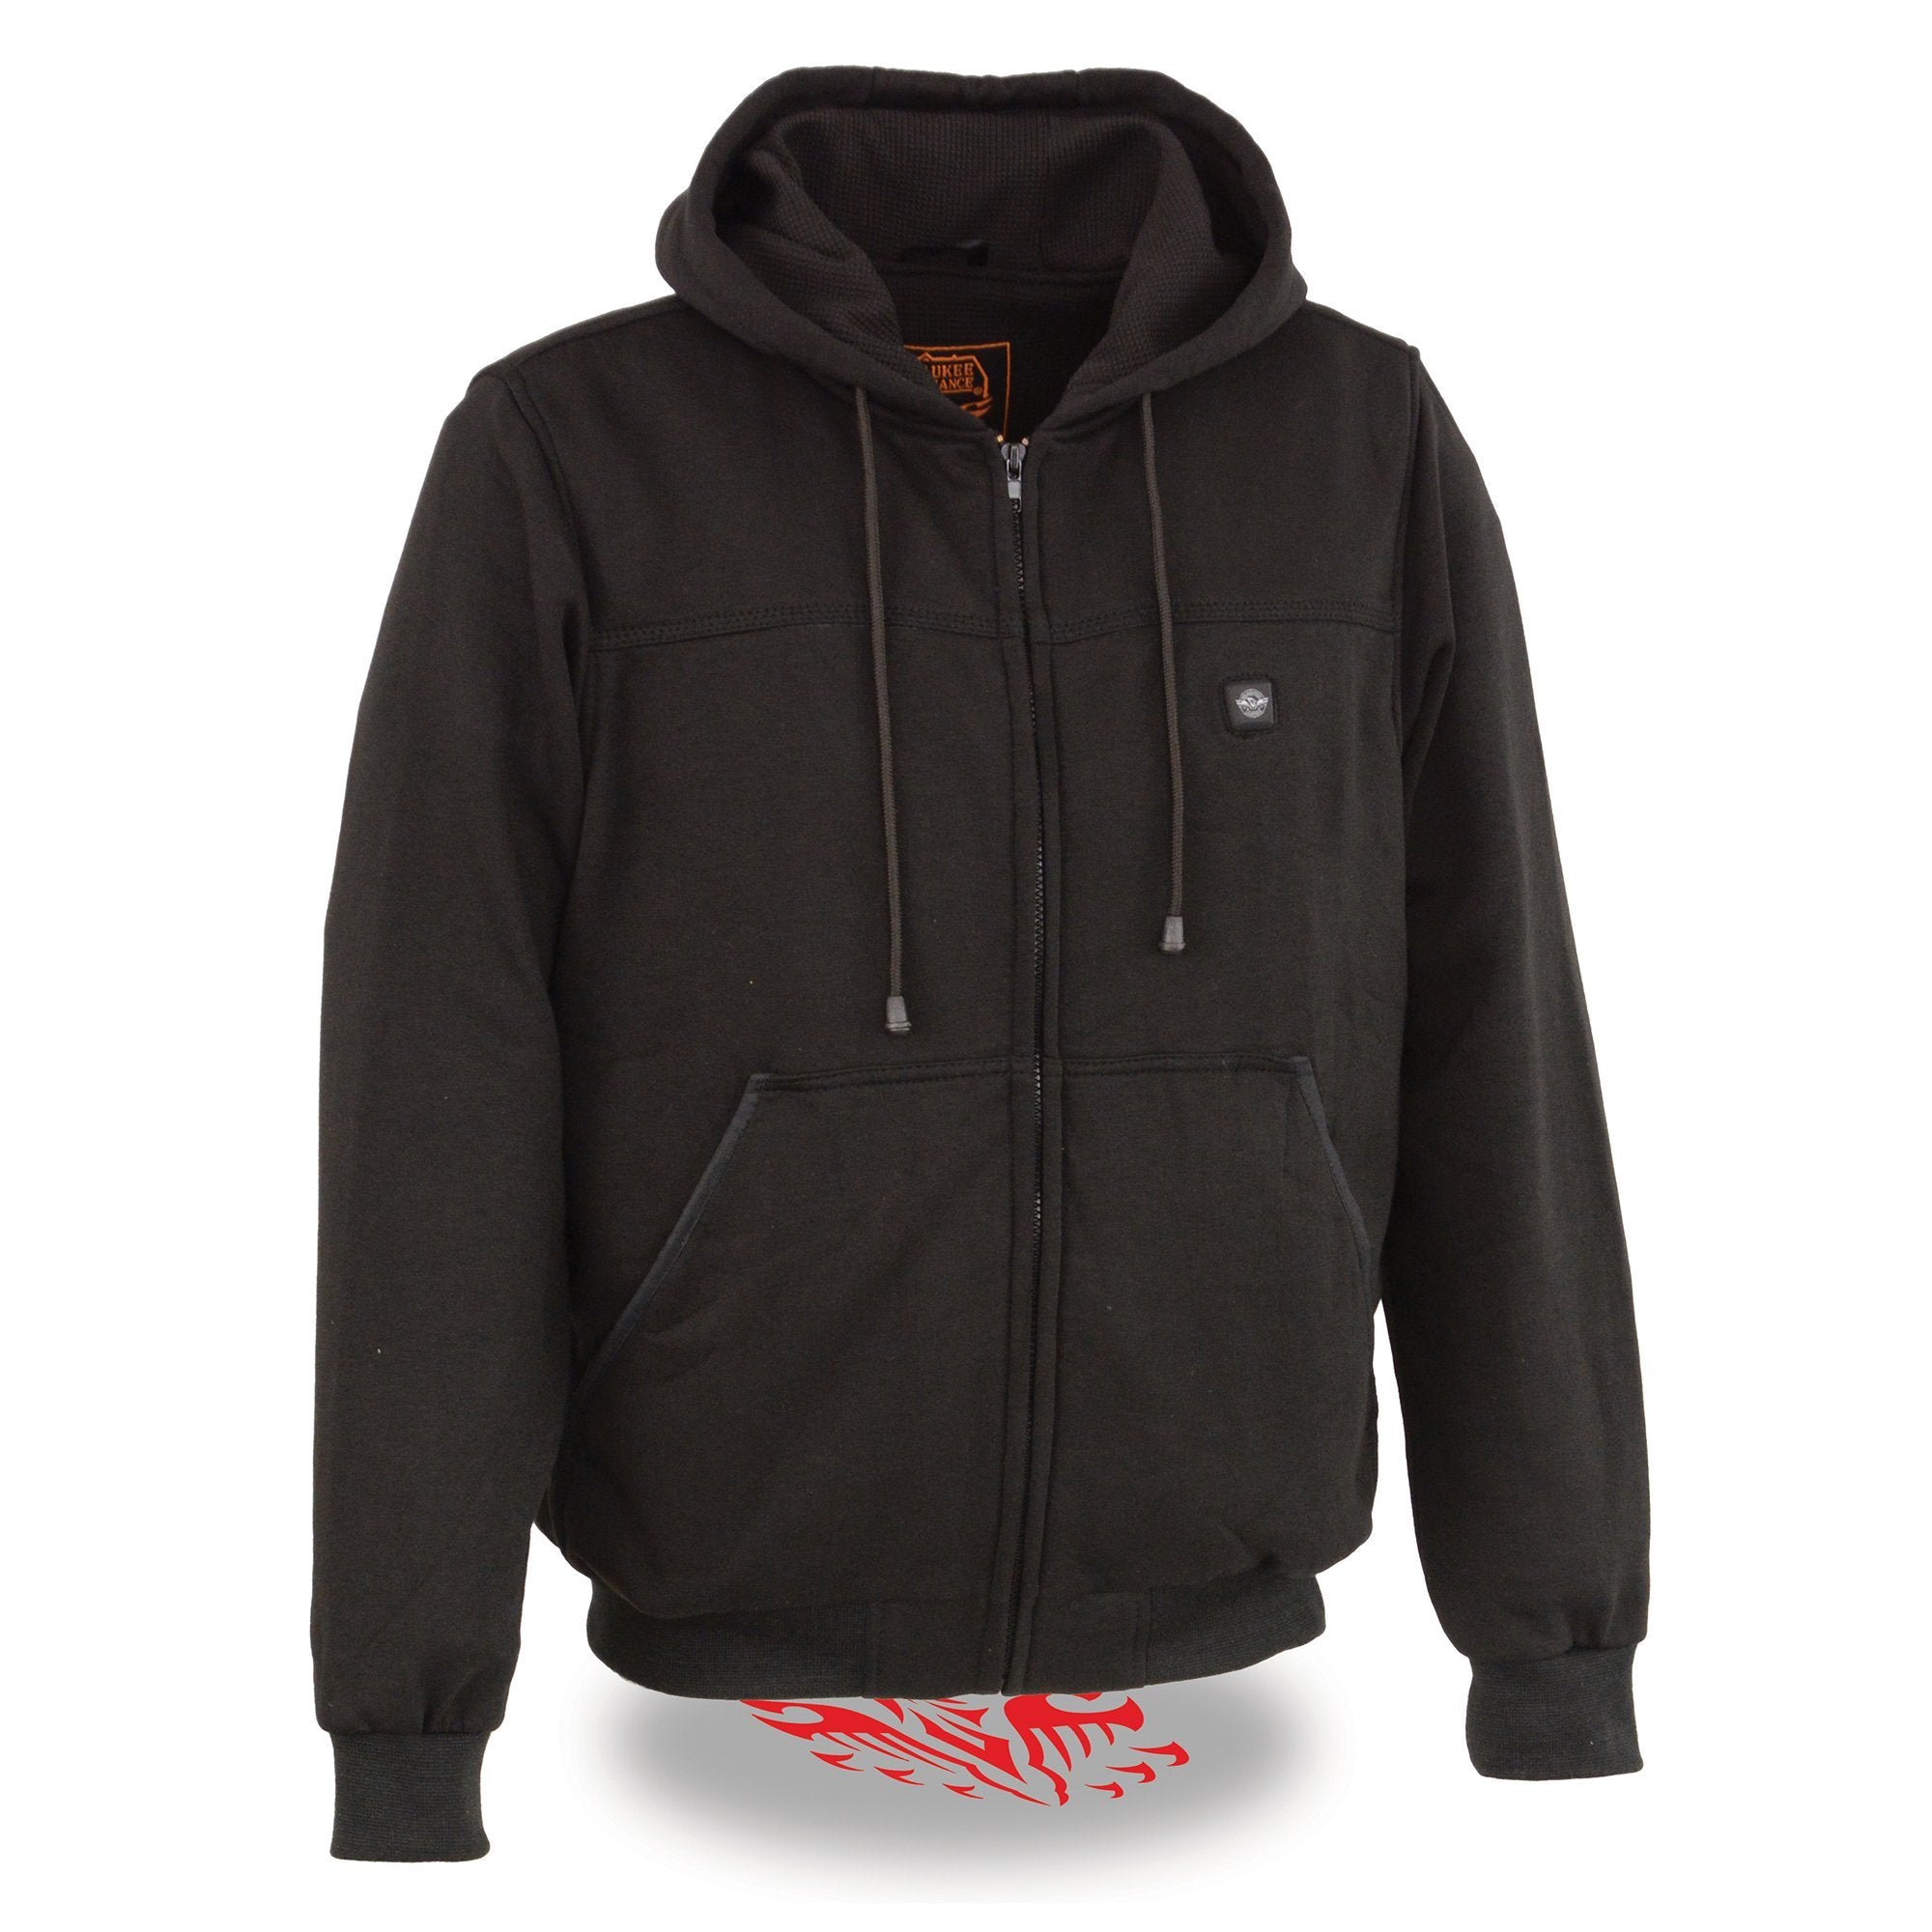 Image of Nexgen Heat MPM1713SET Men's Fiery Heated Hoodie- Black Zipper Front Sweatshirt Jacket for Winter w/Battery Pack